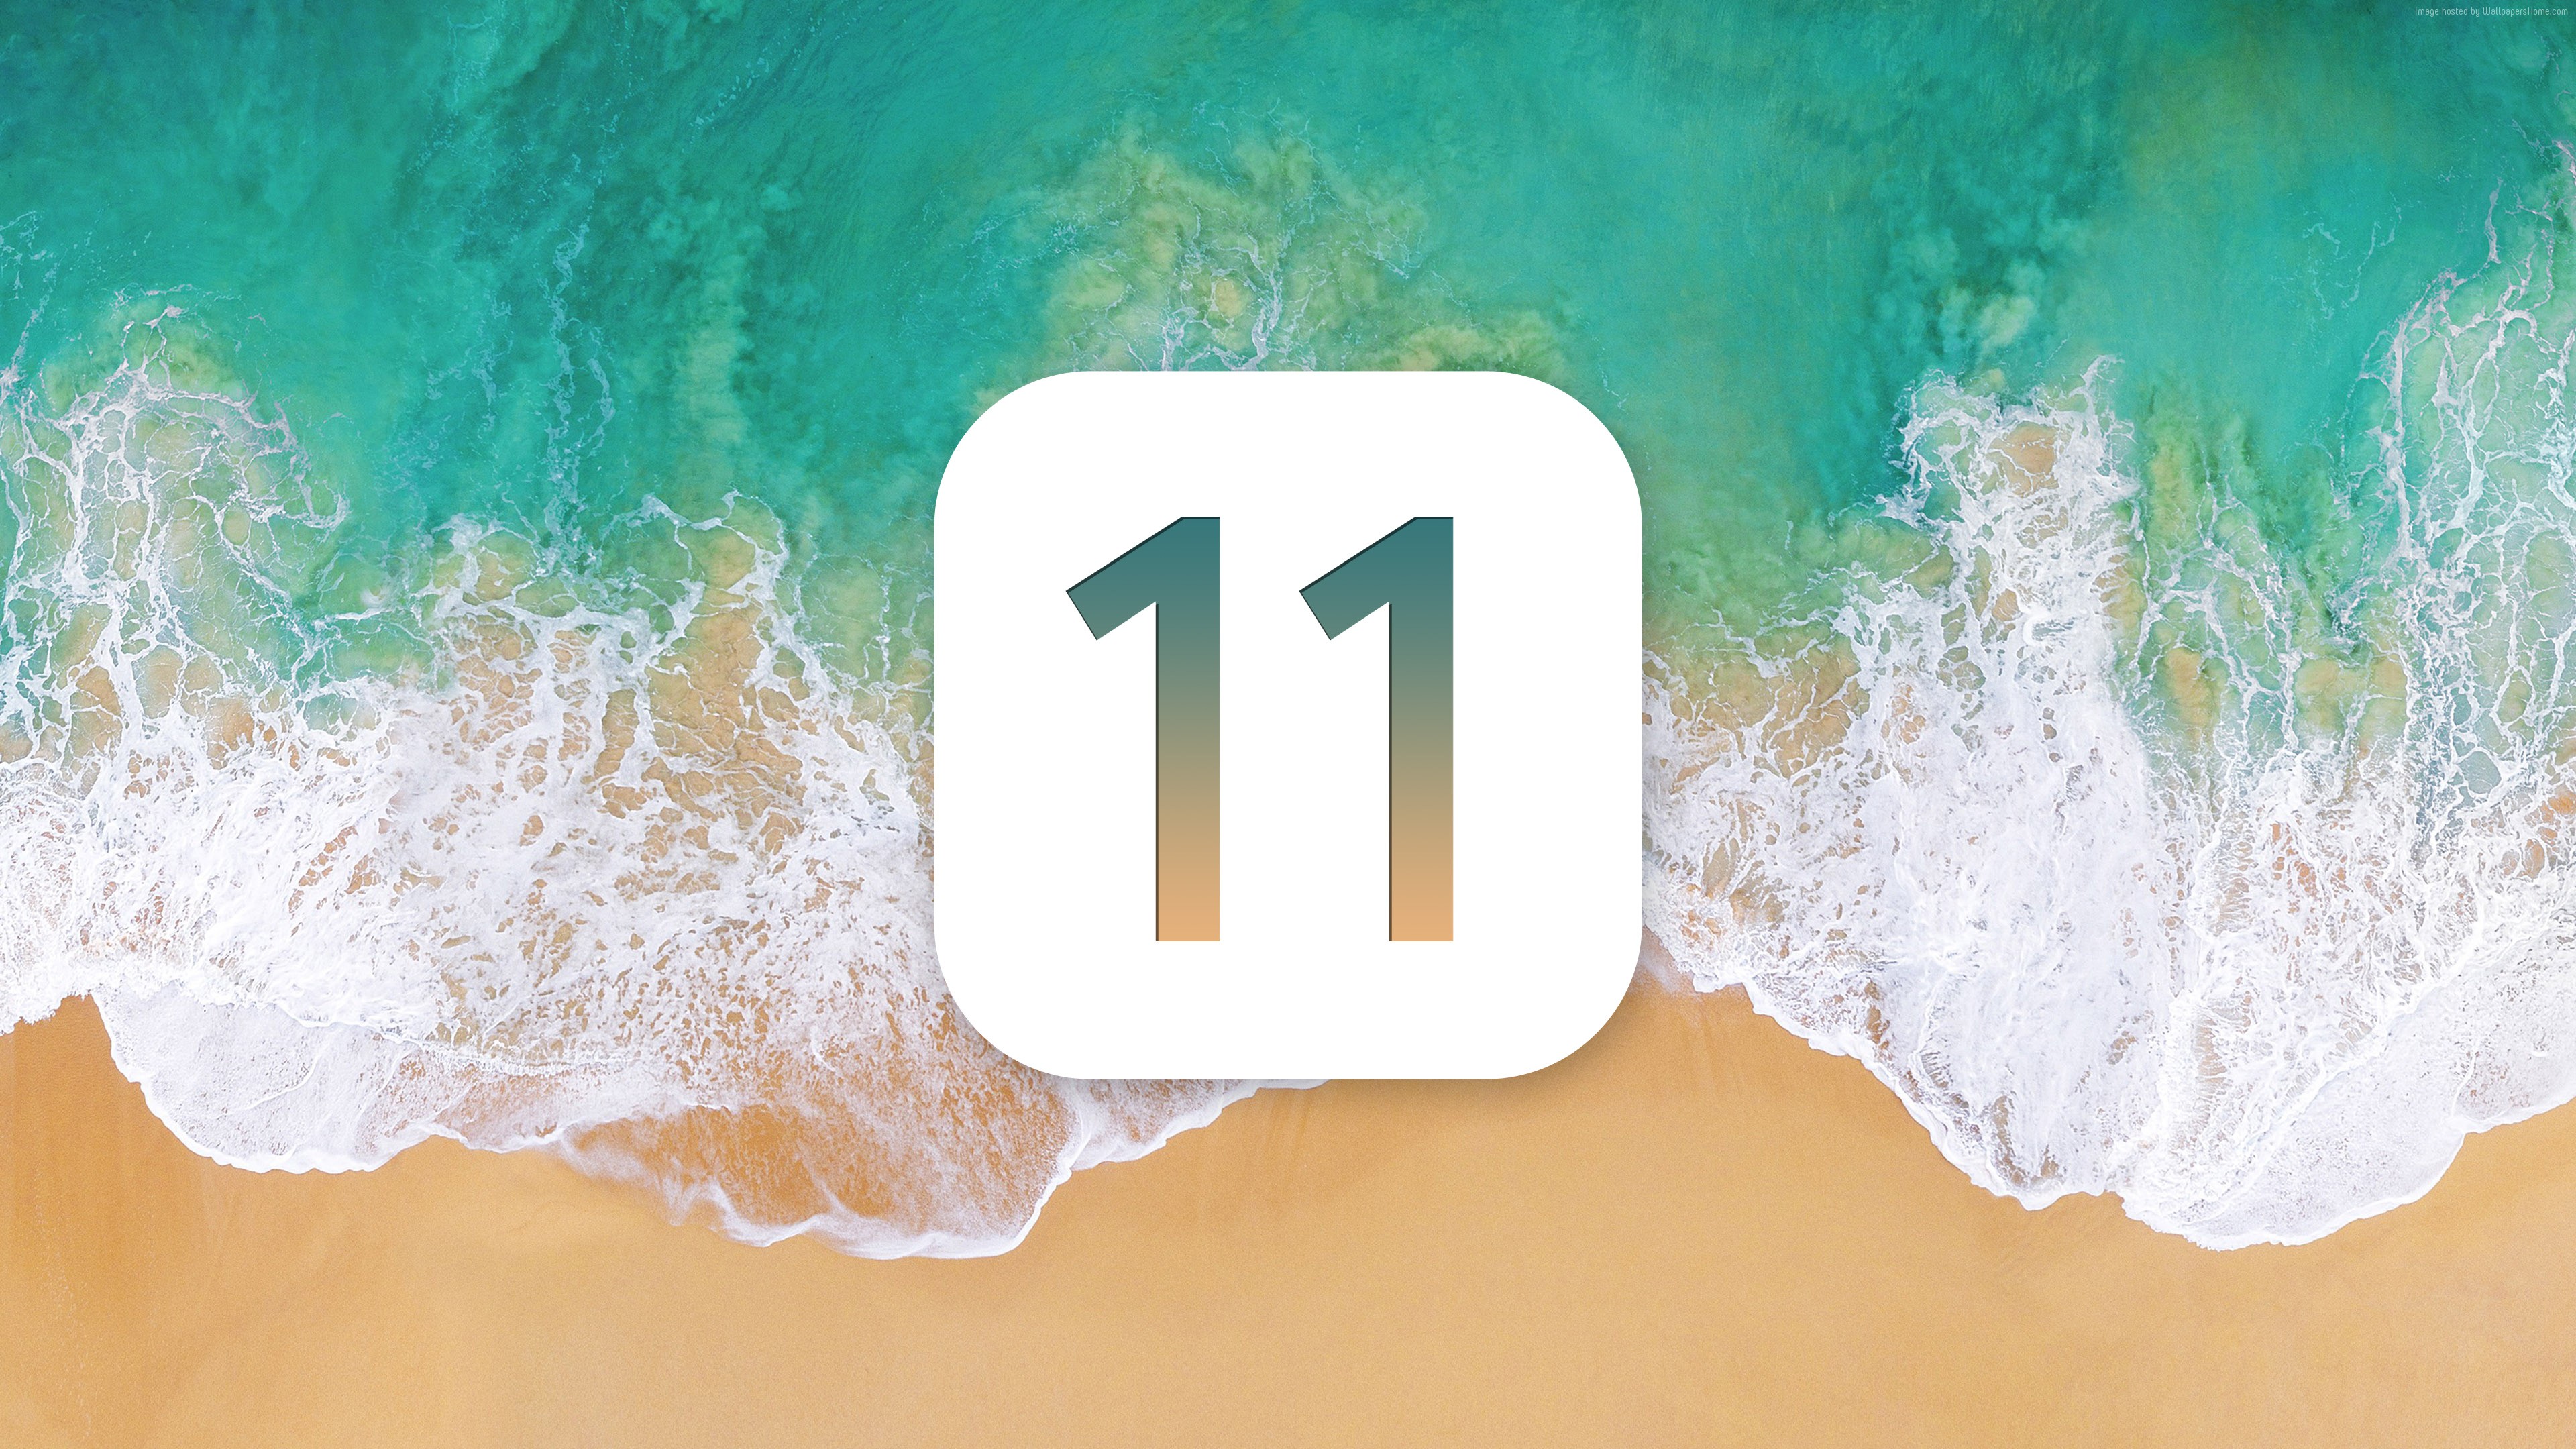 Megérkezett az iOS 11.1.2 frissítés, iPhone X tulajdonosoknak kötelező a letöltés